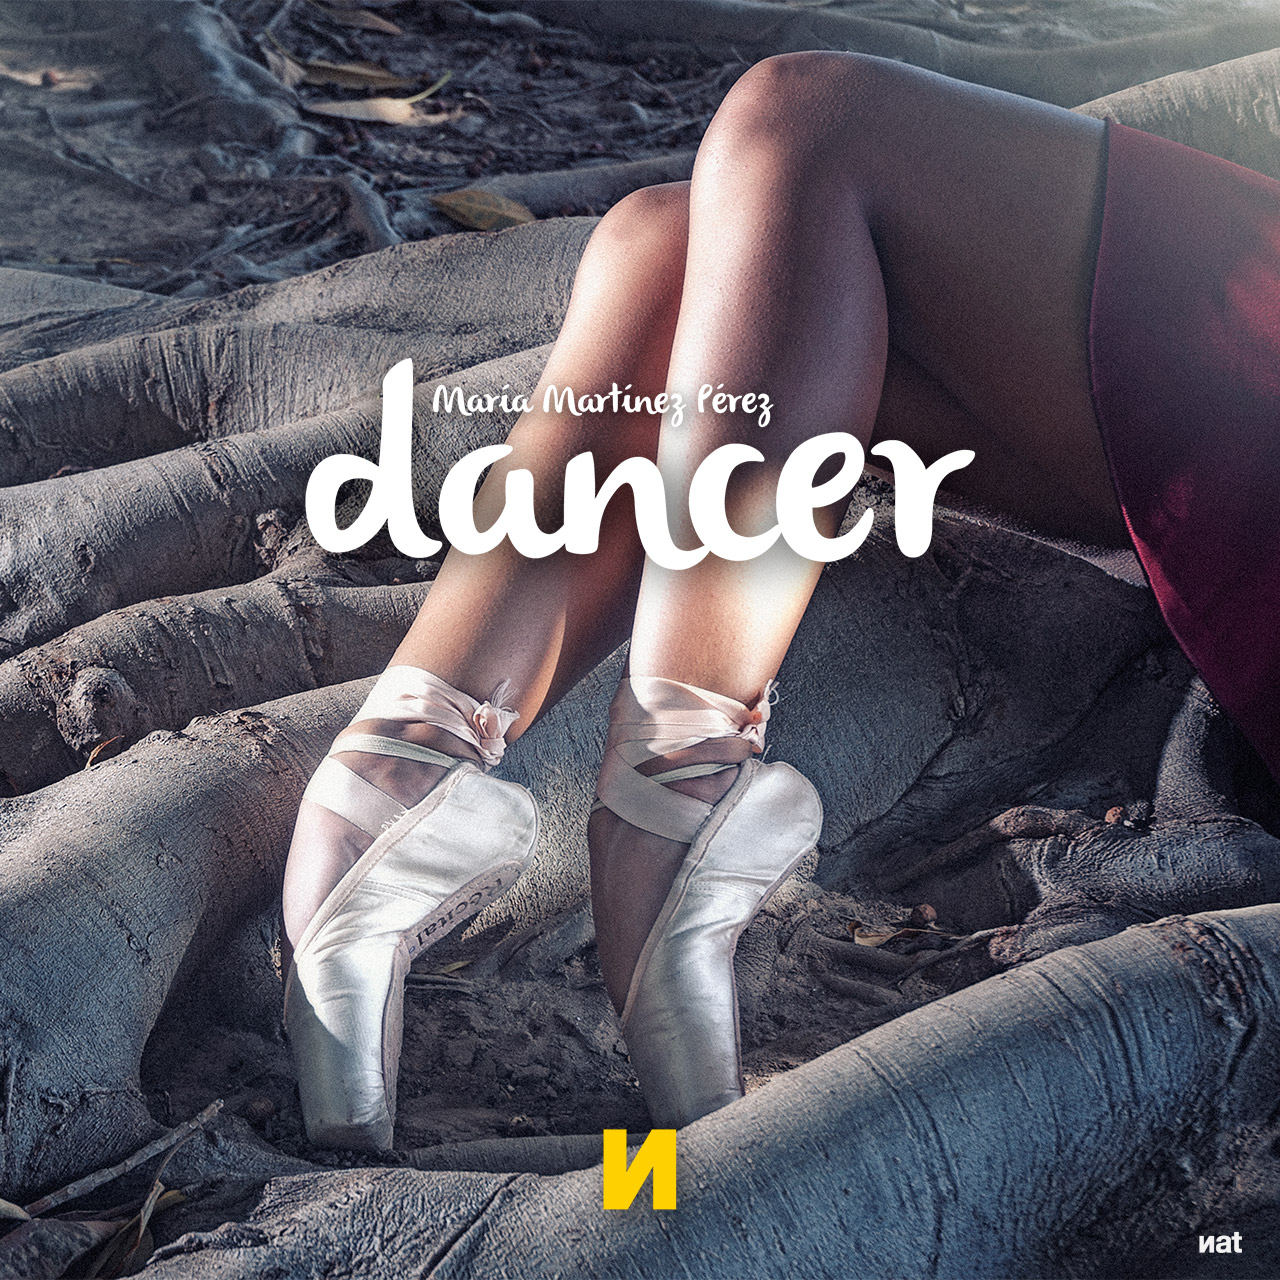 Álbum fotográfico 'Dancer'. Fotografía y diseño de Nat Estudi.